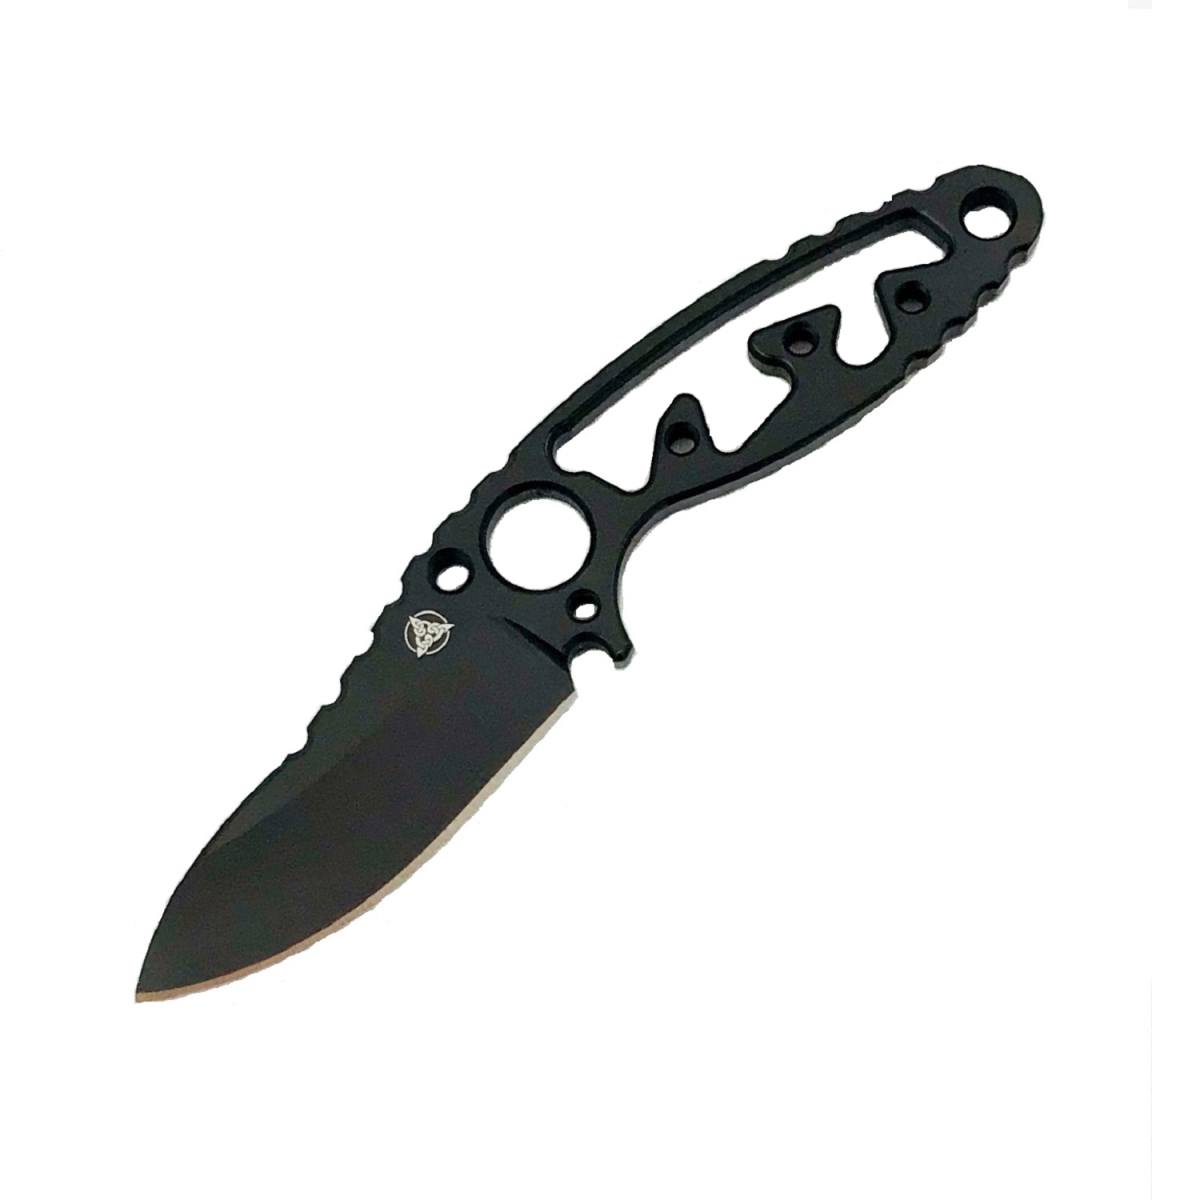 4015974 5.25 X 2.2 In. Afterburner Neck Knife Blade, Black